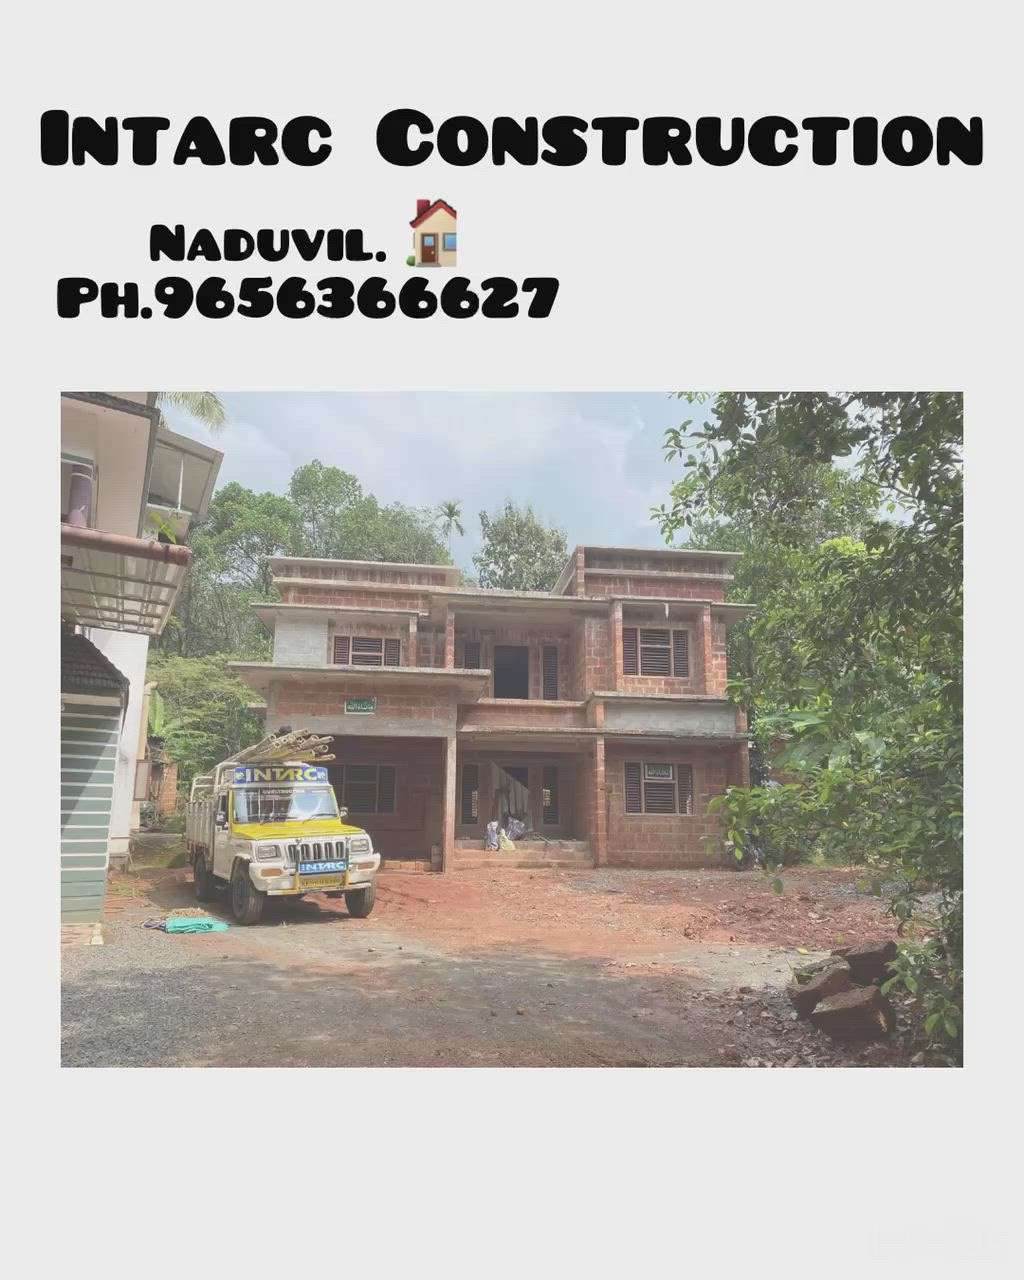 #intarc construction#
കണ്ണൂർ ജില്ലയിൽ എവിടെയും മികച്ച ക്യാലിറ്റിയിൽ ബ്രാൻഡഡ് മെറ്റീരിയൽ ഉപയോഗിച്ച് വീട്,ബിൽഡിംഗ് ,ഡിസൈനിങ് & നിർമാണം ചെറിയ ബഡ്ജറ്റിൽ ചെയ്തുകൊടുക്കുന്നു 
ph:9656366627
     9747446520